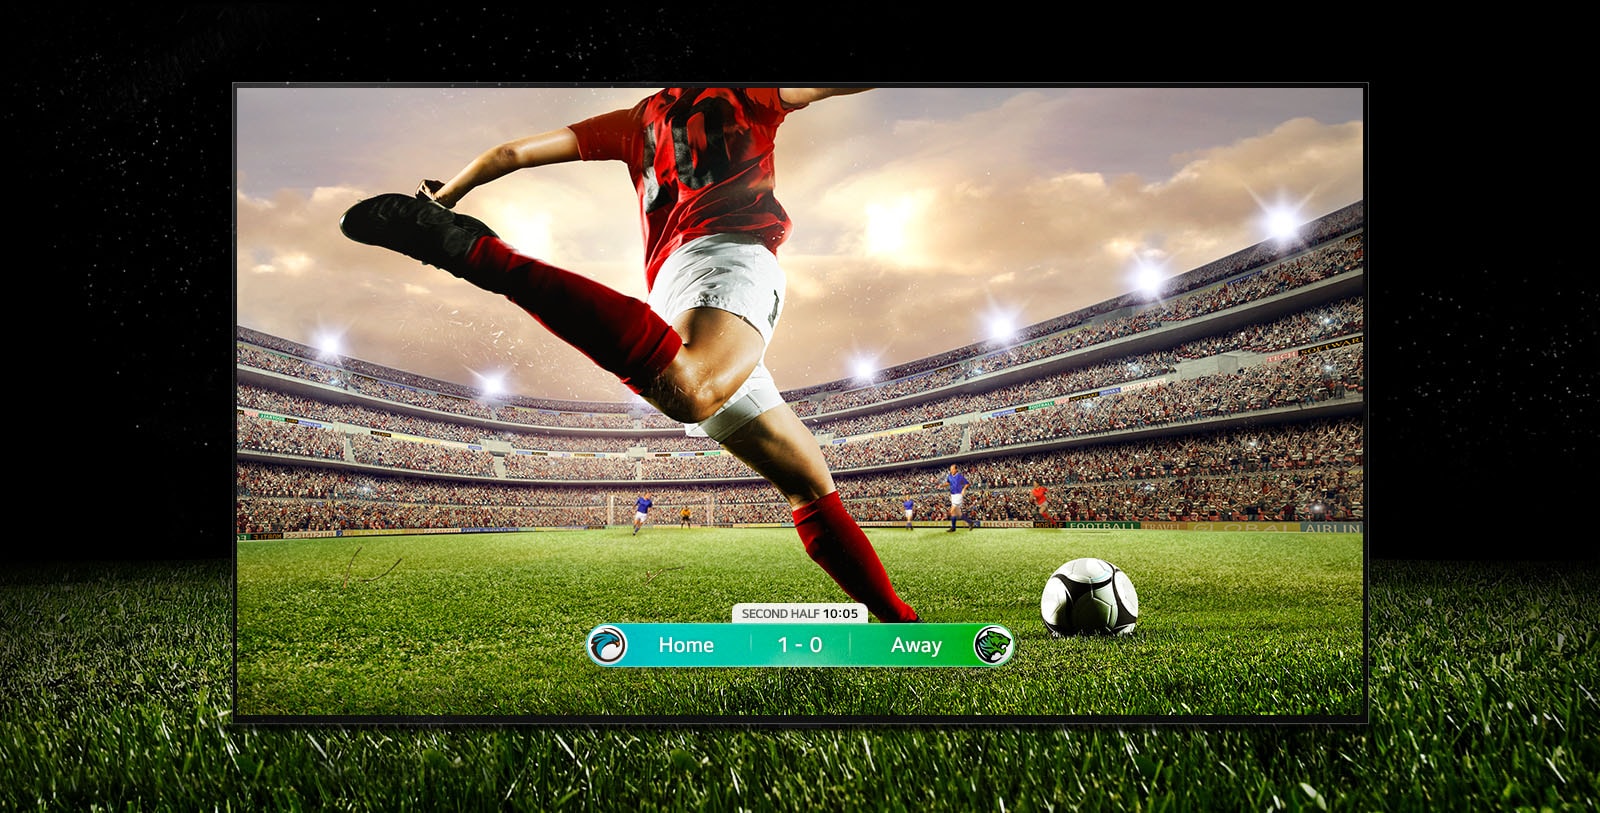 Une image de l'affichage montrant un match de football avec un joueur portant une bande rouge sur le point de frapper le ballon à travers le stade.  Le score du jeu est visible en bas de l'écran.  L'herbe verte du terrain s'étend au-delà de l'écran jusqu'au fond noir.